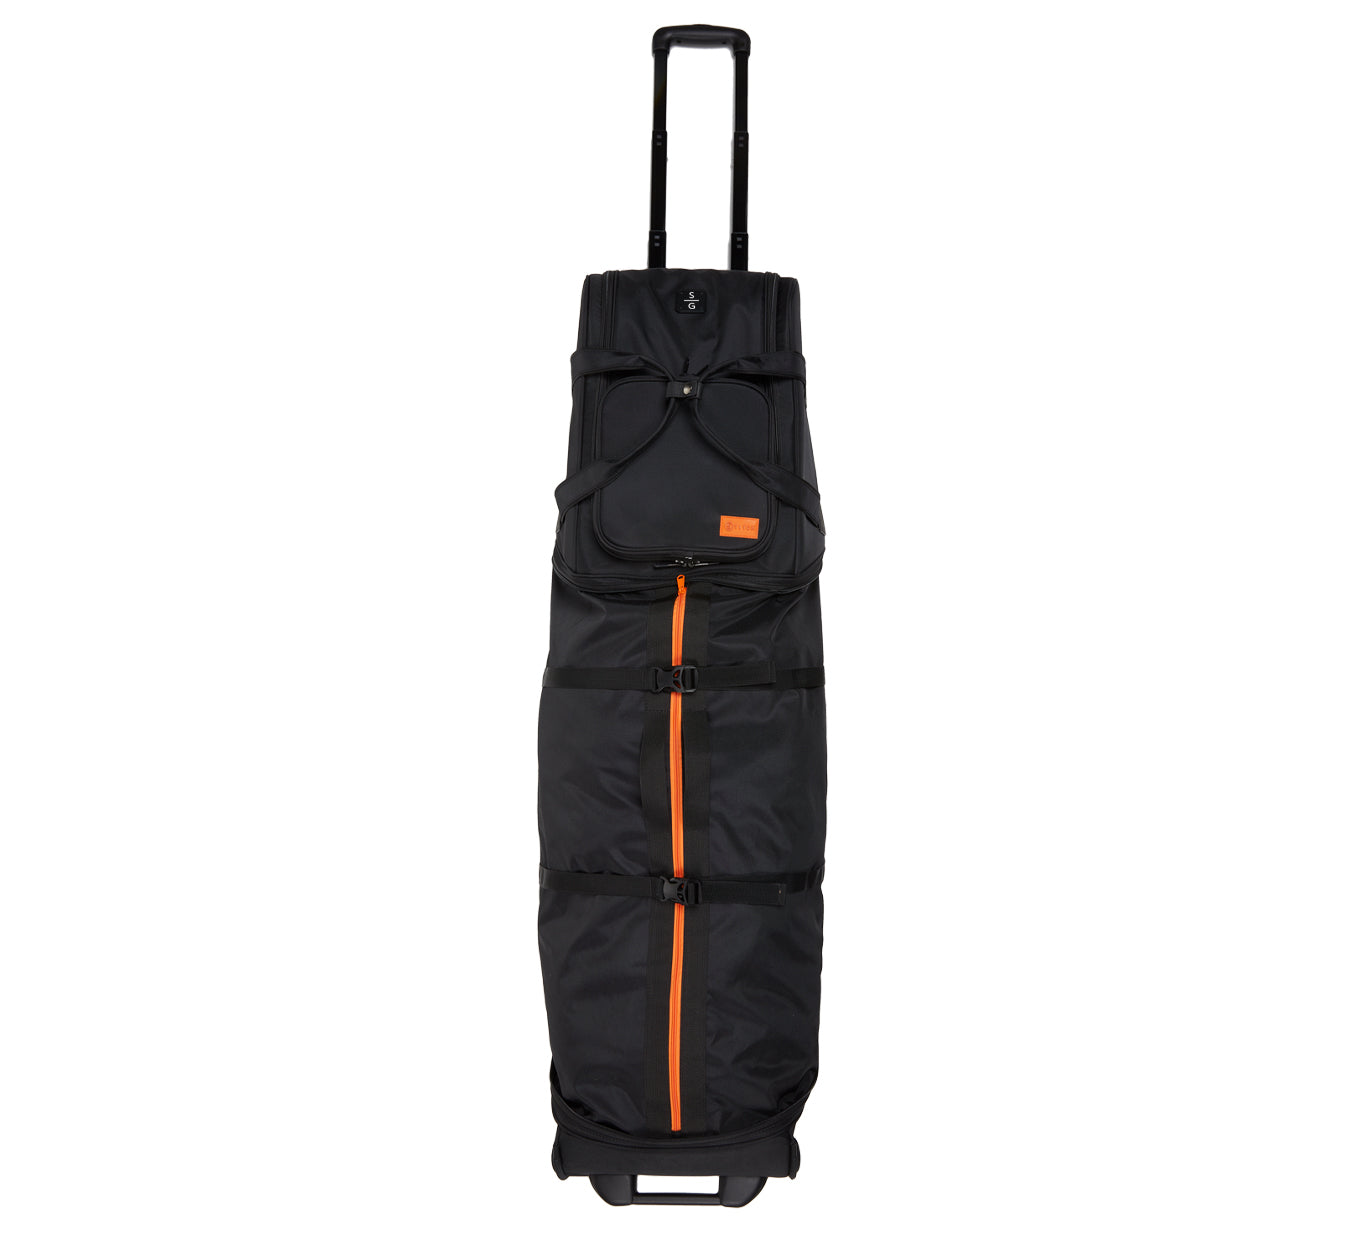 MUT - Multiuse Traveler Bag